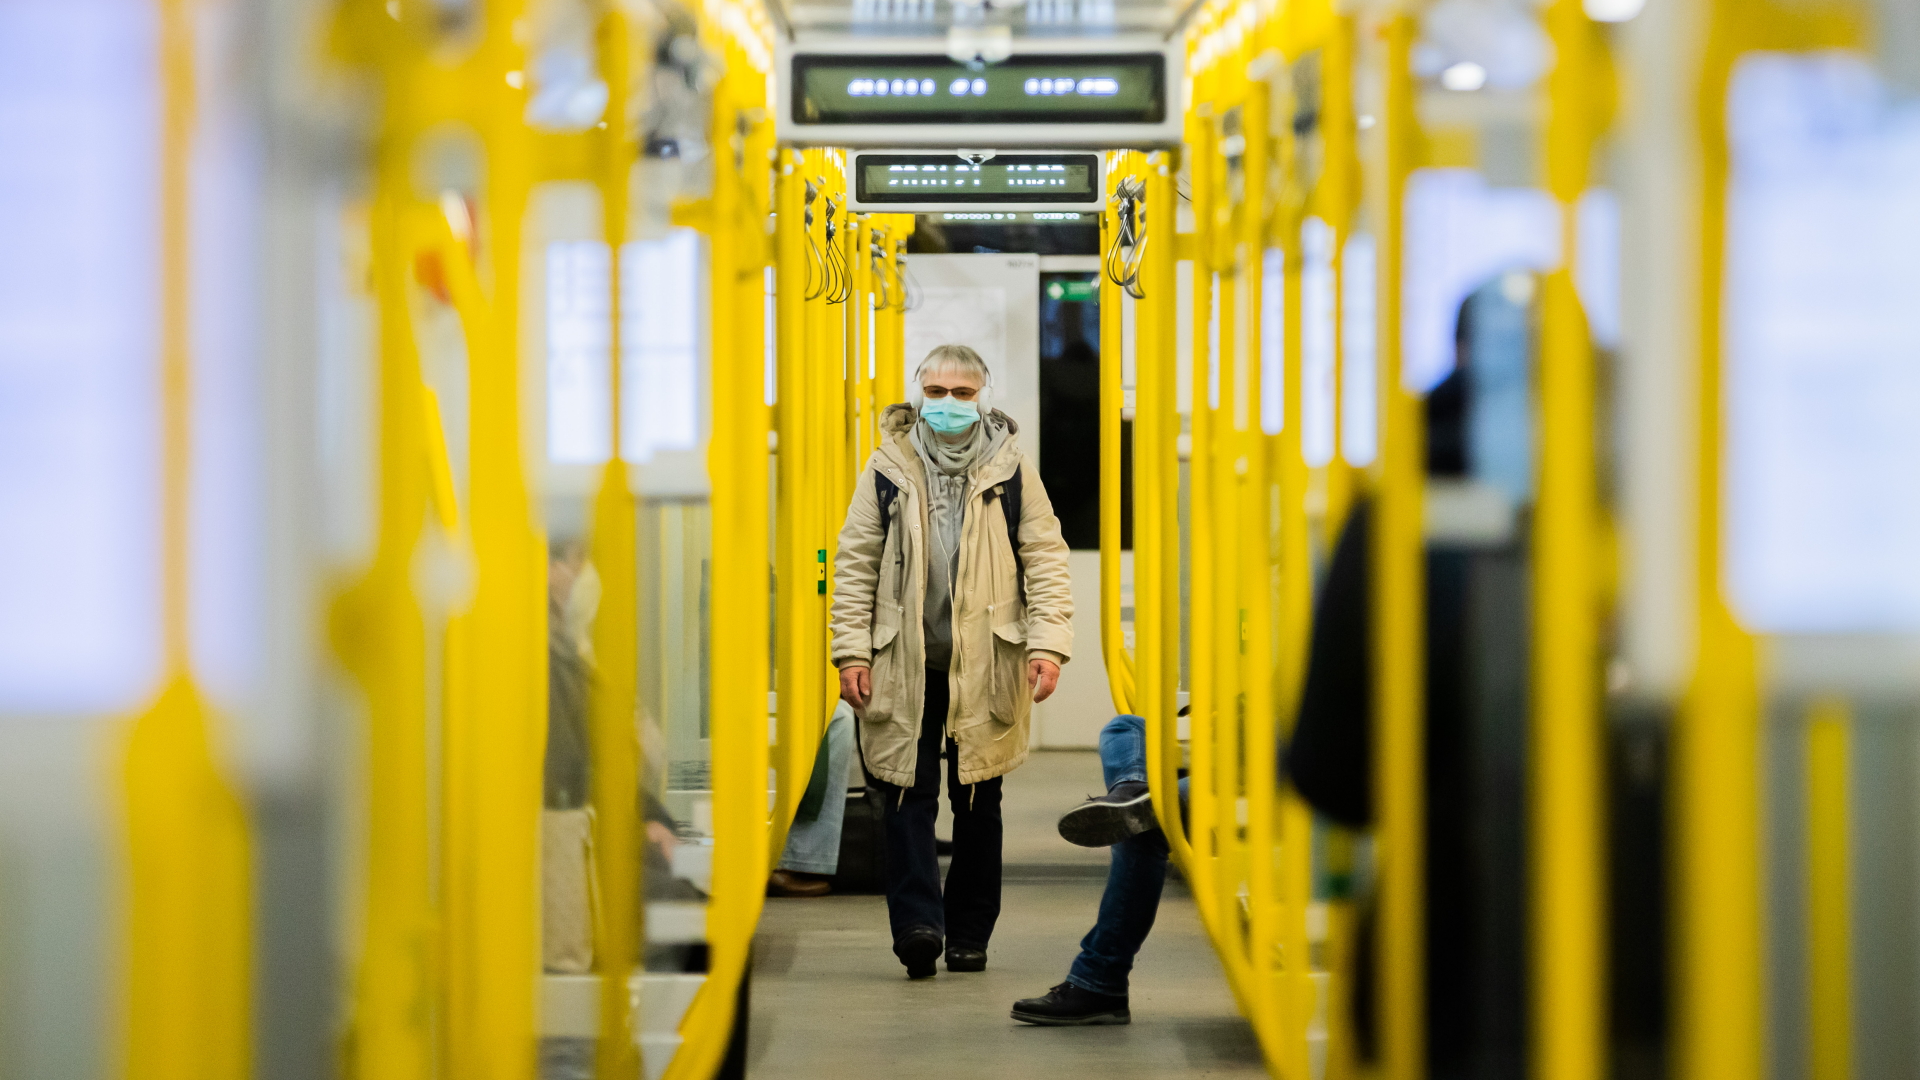 Passagier mit Maske in der Berliner U-Bahn | dpa